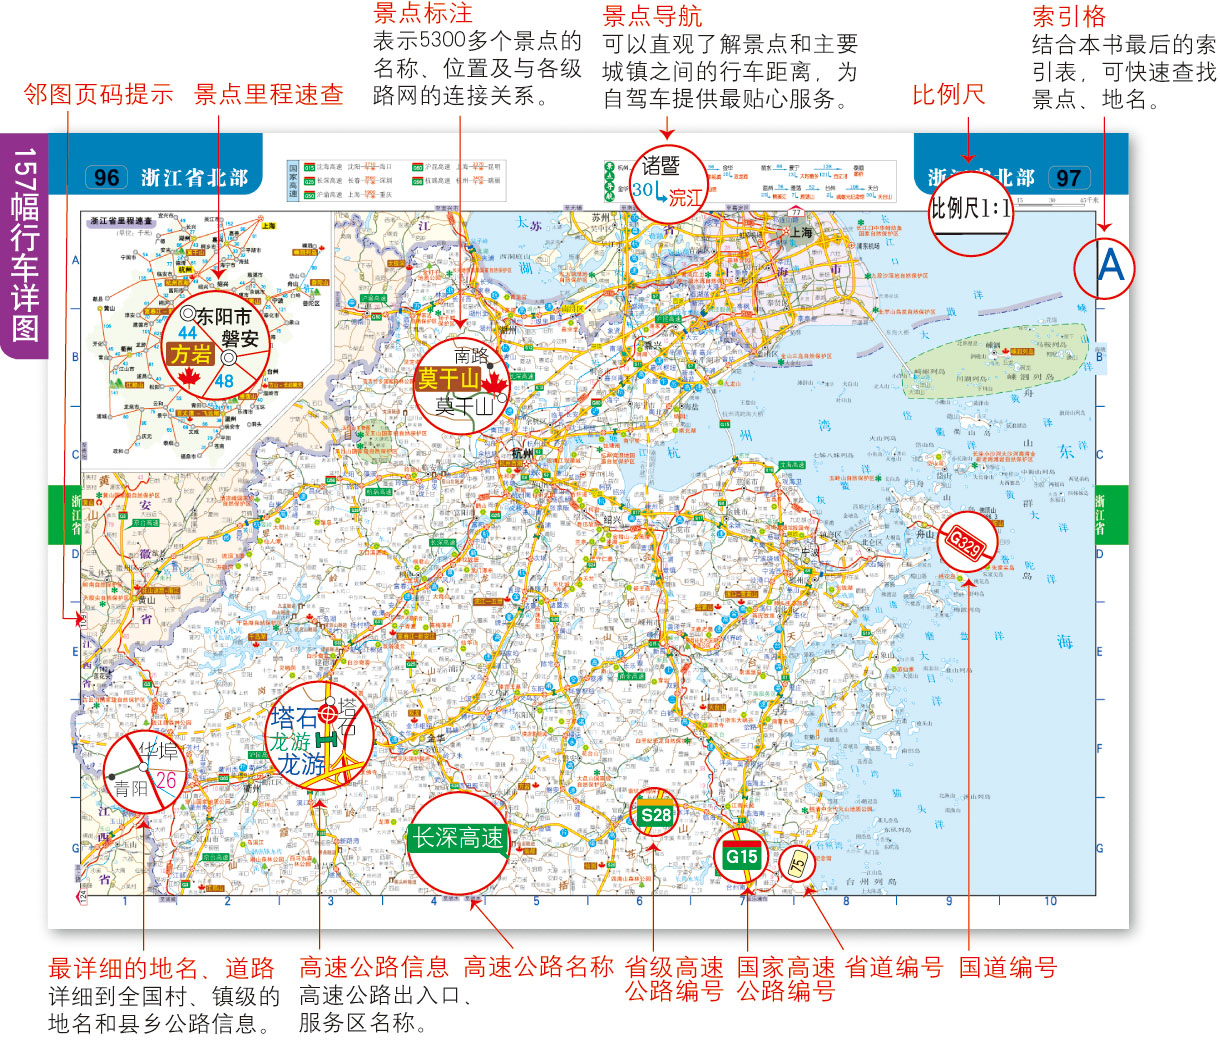 《2015中国旅游交通地图集(驾车出游便携版)》